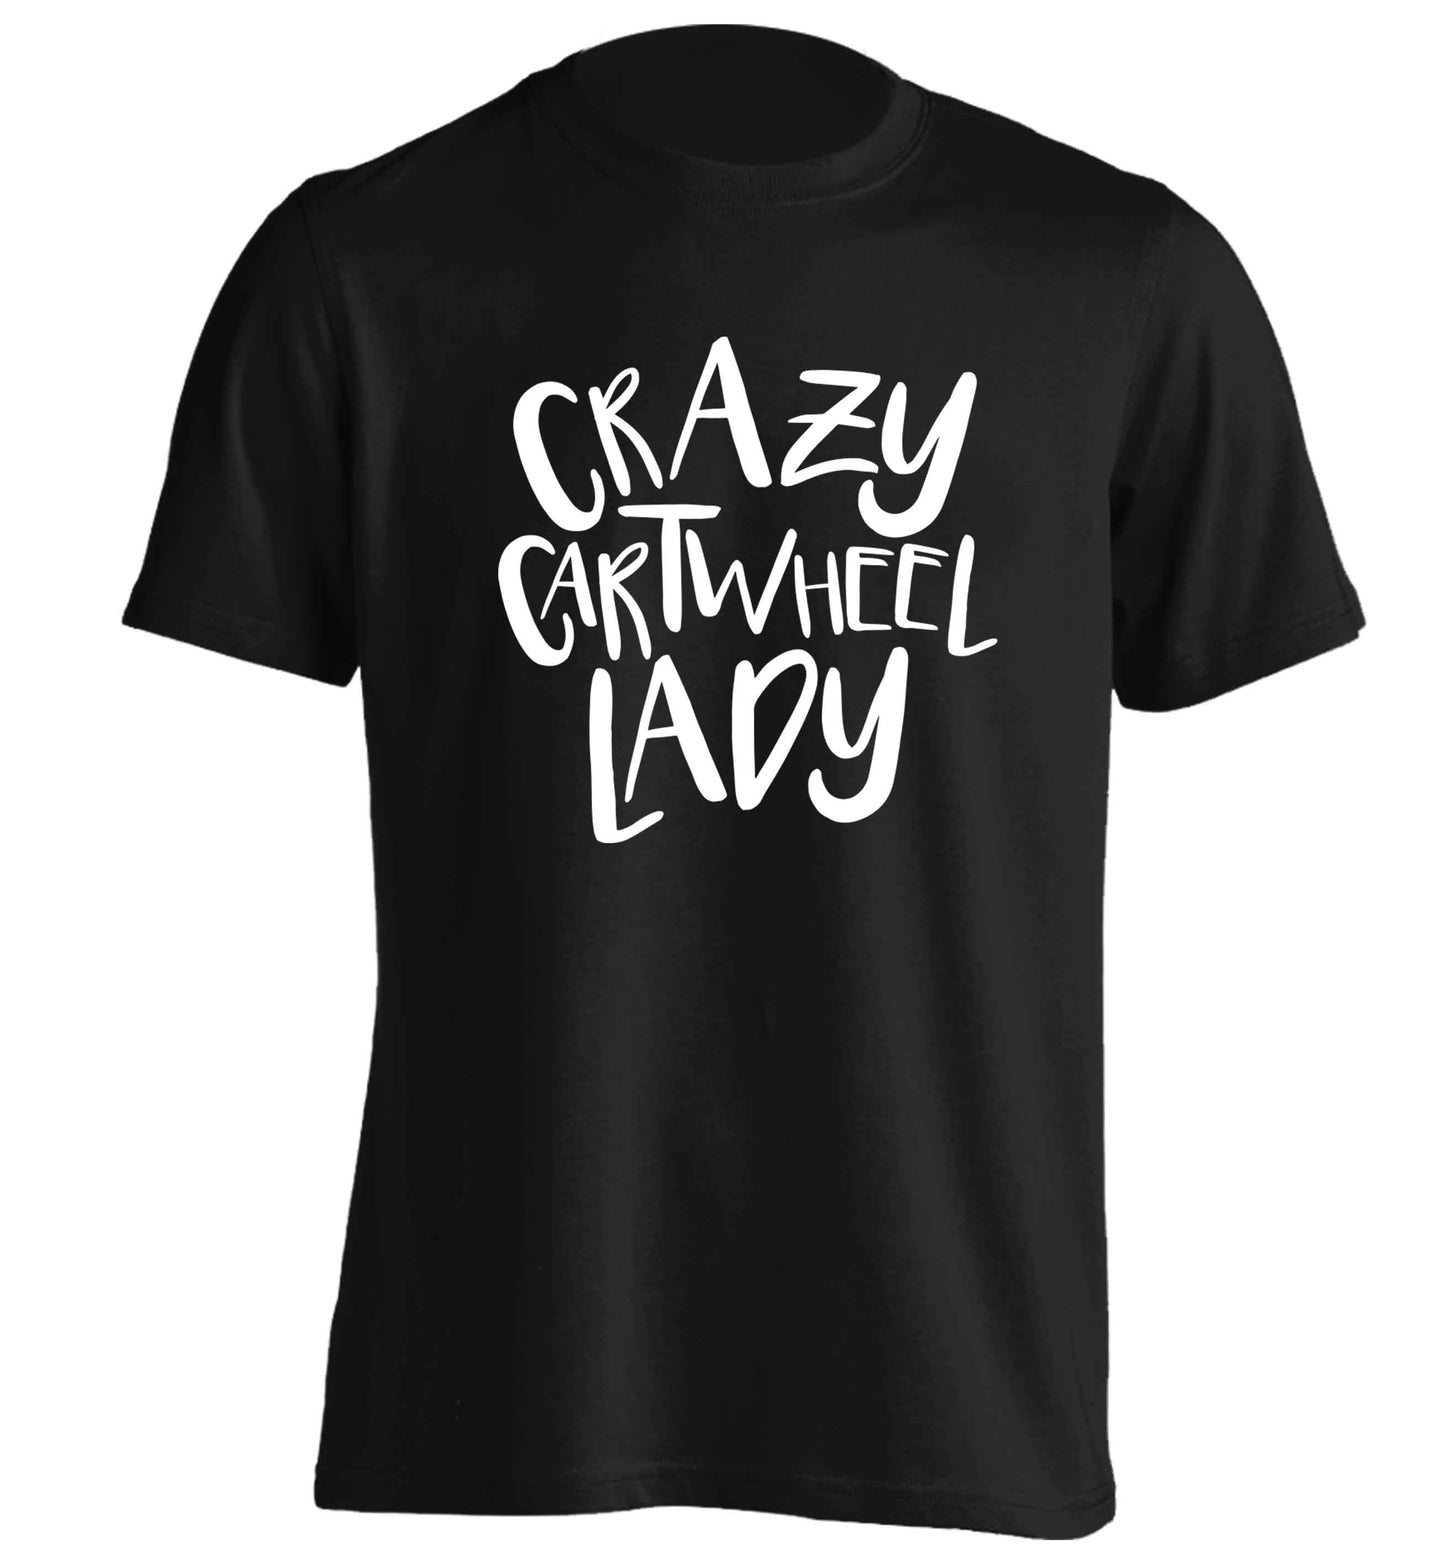 Crazy cartwheel lady adults unisex black Tshirt 2XL